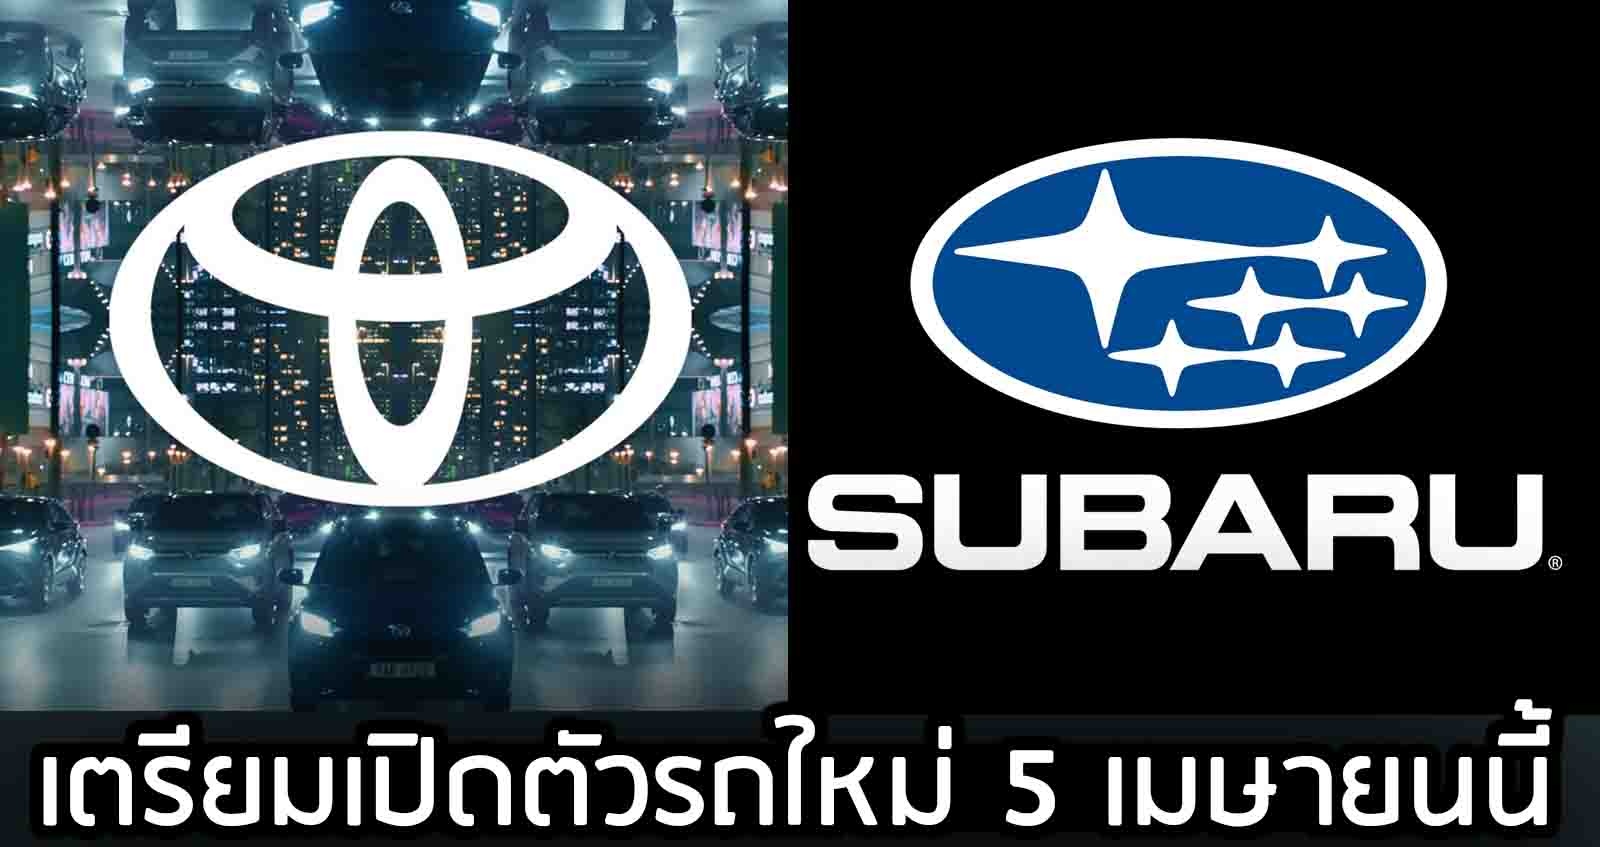 TOYOTA GR และ Subaru เตรียมเปิดตัวรถใหม่ 5 เมษายนนี้